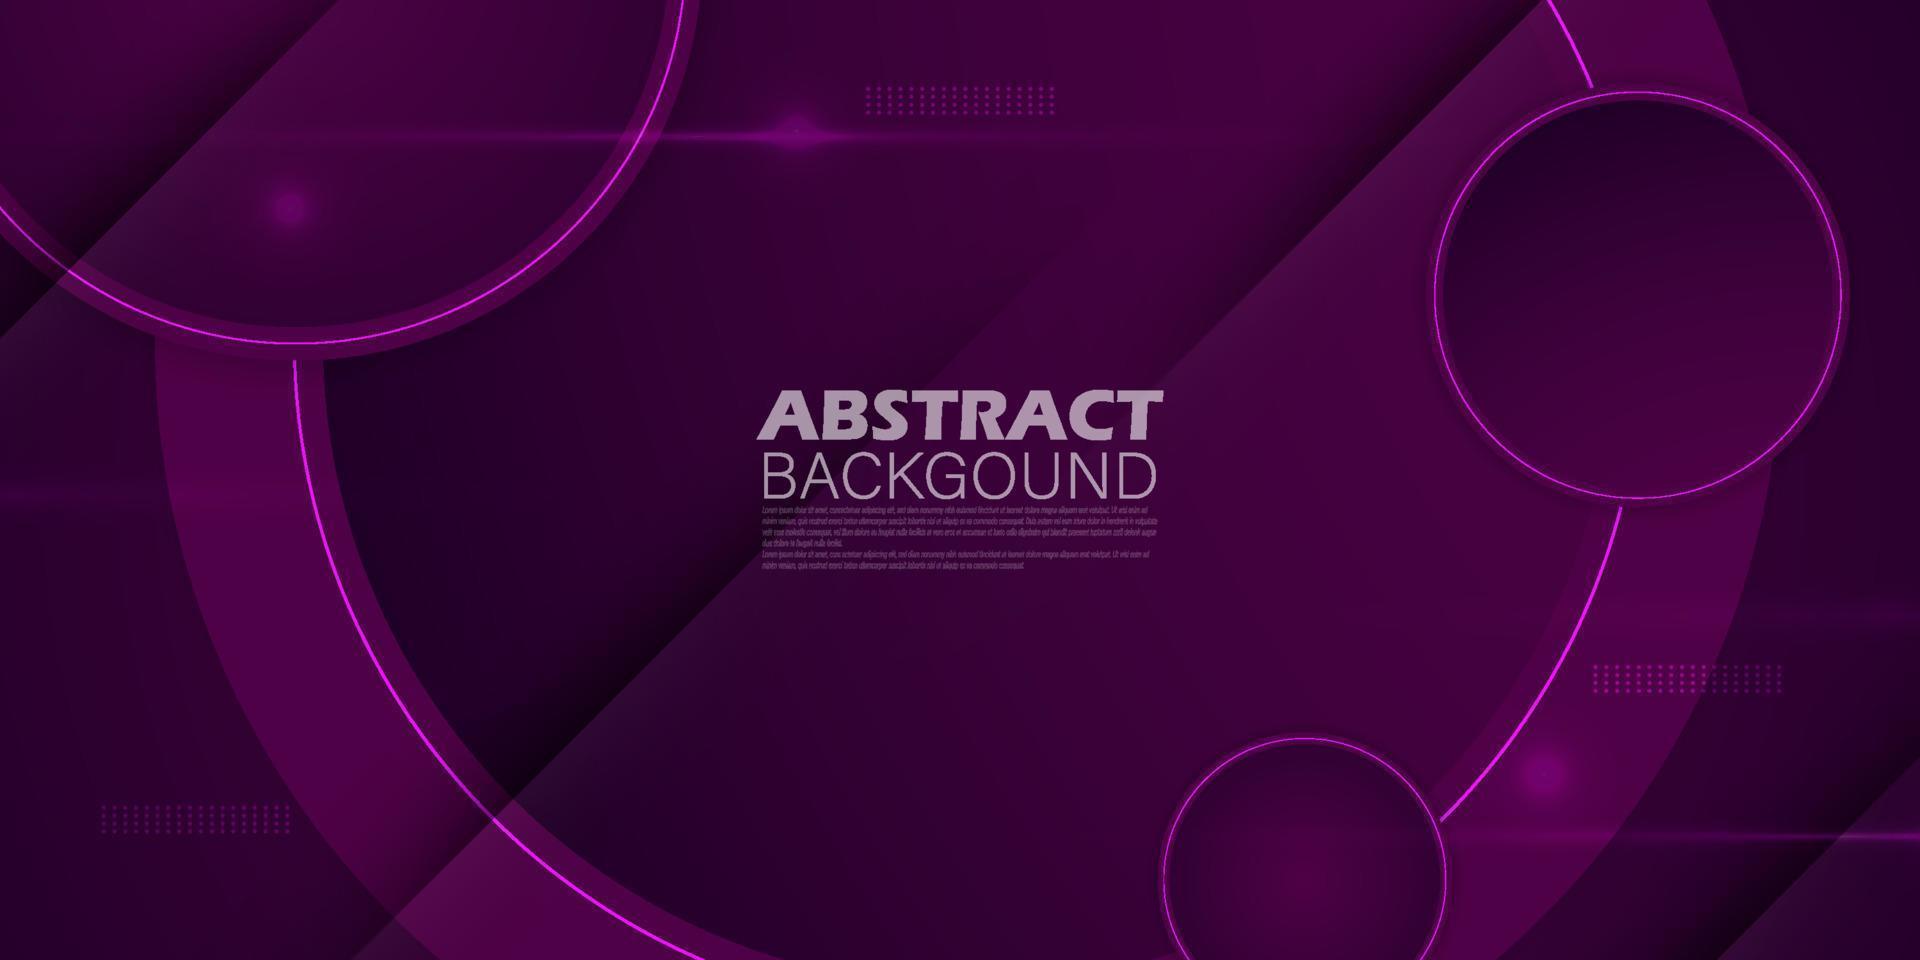 fondo vectorial violeta oscuro con color degradado y sombra dinámica en el fondo. círculo de fondo moderno superpuesto en capas para diseño gráfico. eps10 vector